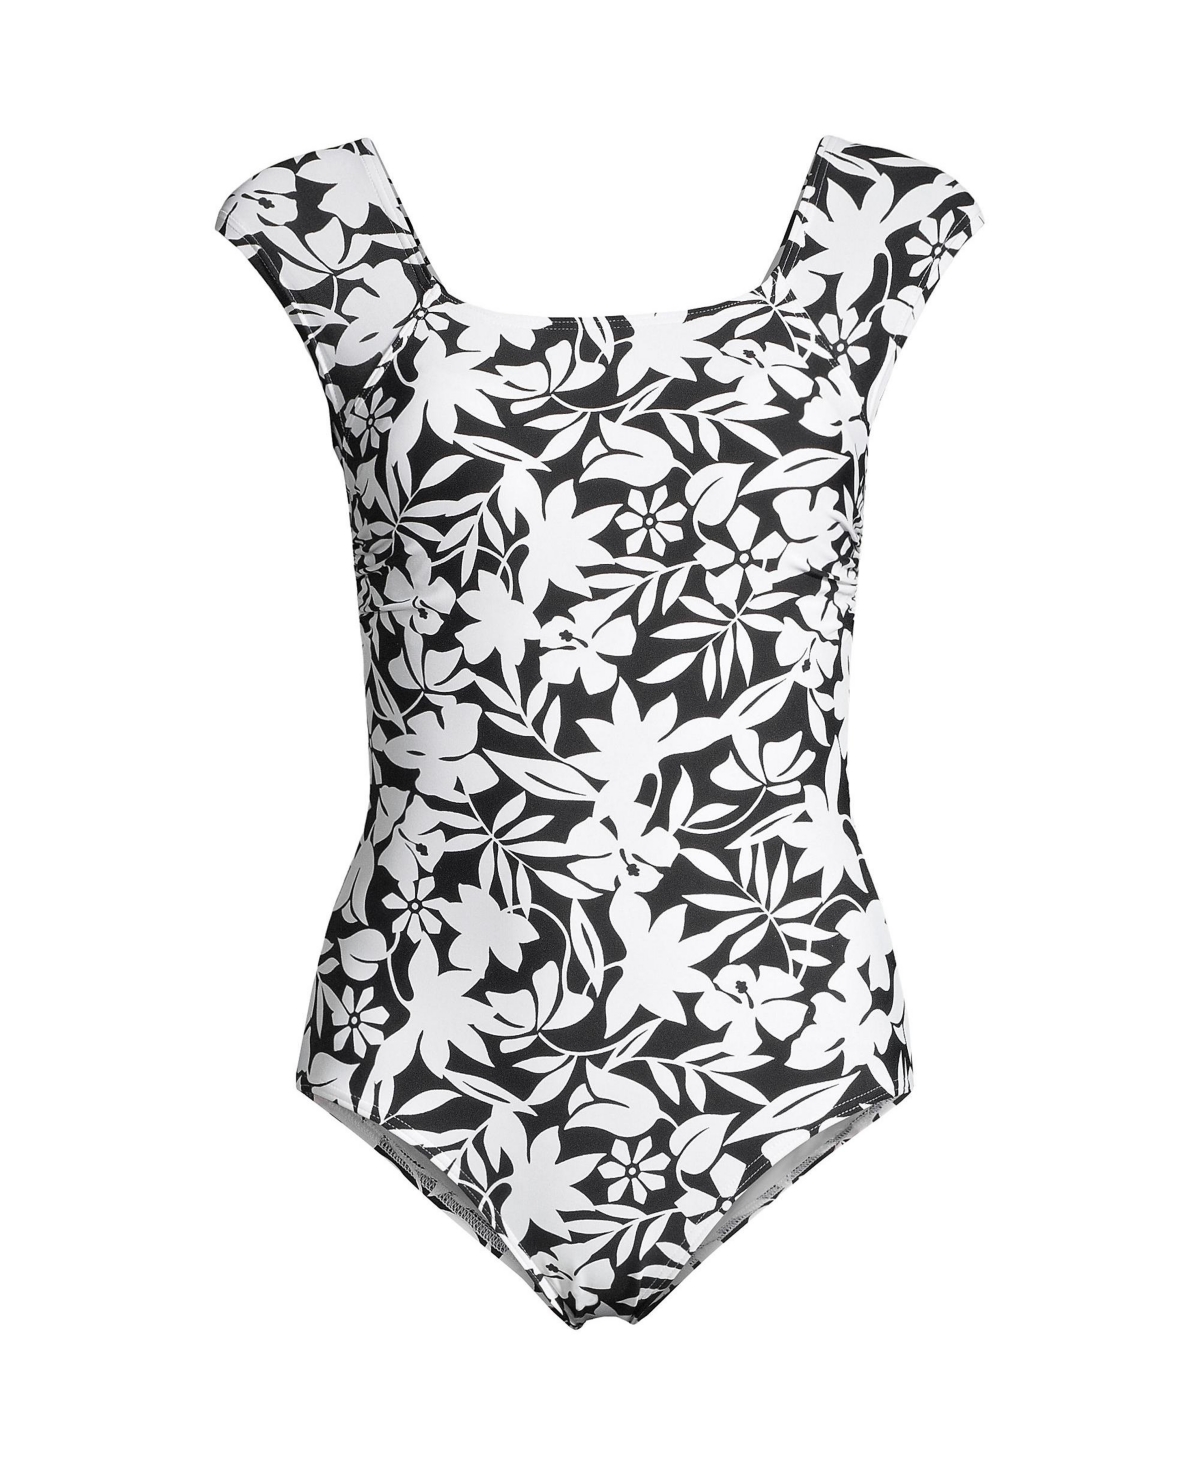 Lands' End Women's Plus Size SlenderSuit Grecian Tummy Control Chlorine  Resistant One Piece Swimsuit 